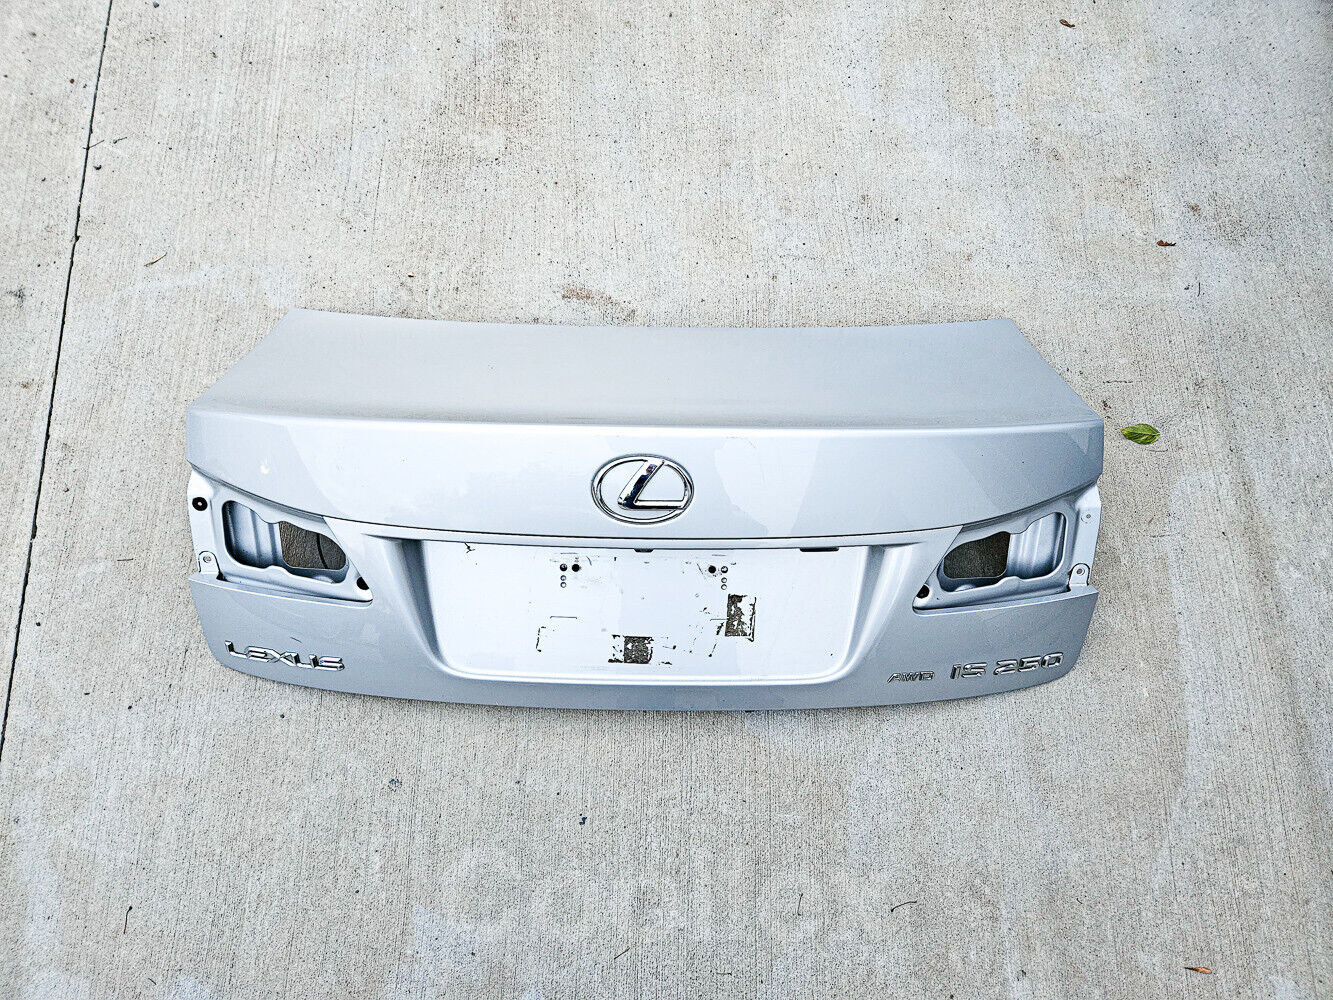 06-08 Lexus Is250 Rear Trunk Lid Silver cc:1G1 64401-53140 Oem